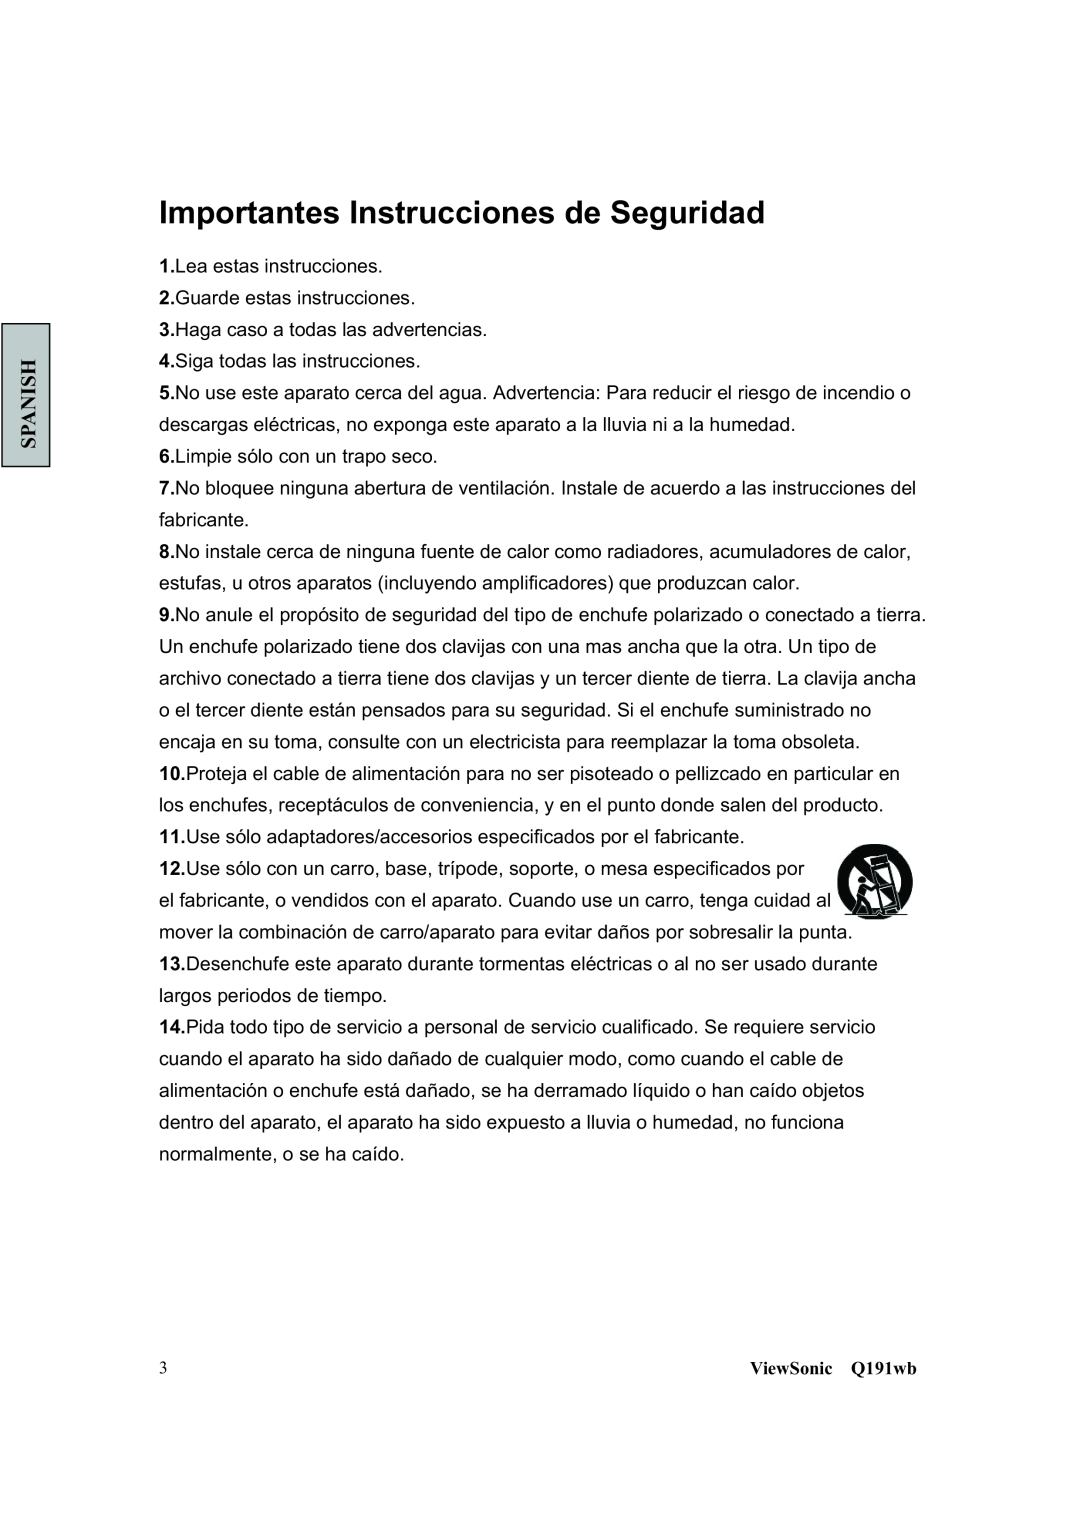 ViewSonic Q191WB manual Importantes Instrucciones de Seguridad, Spanish, ViewSonic Q191wb 